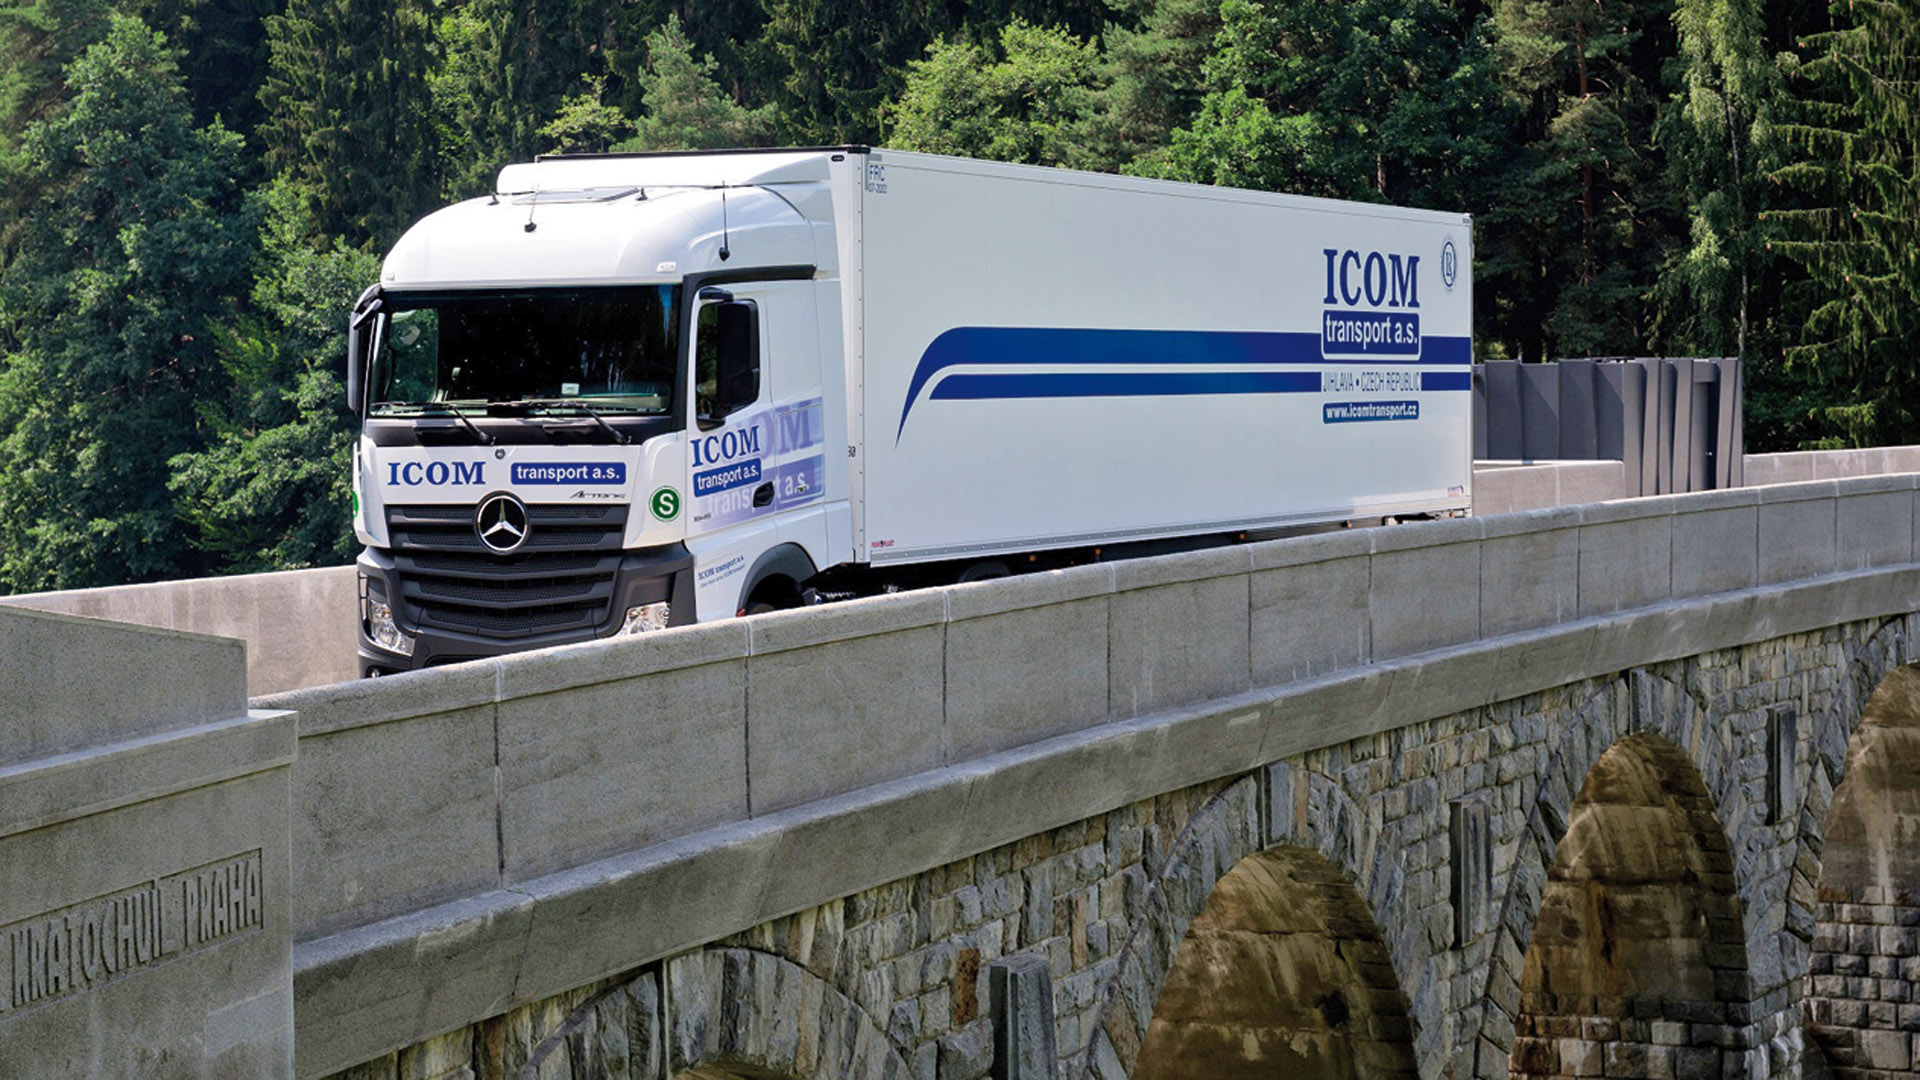 ICOM transport investuje stovky milionů korun do nových vozidel